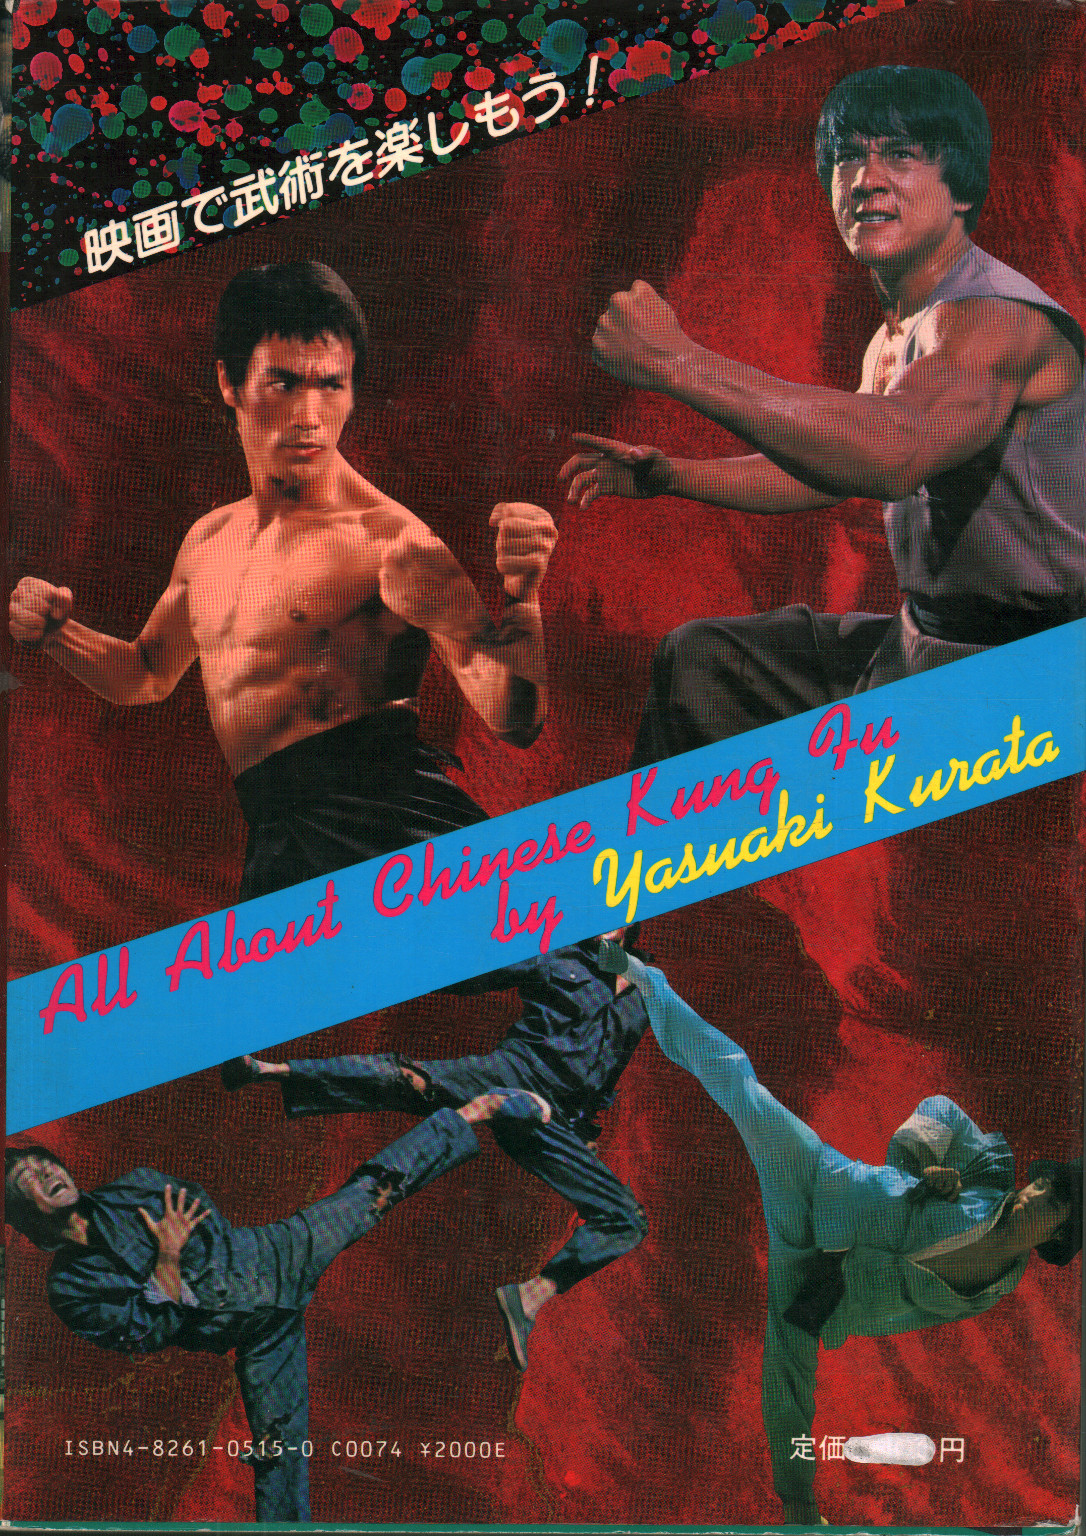 Tout sur le Kung Fu chinois, Yasuaki Kurata